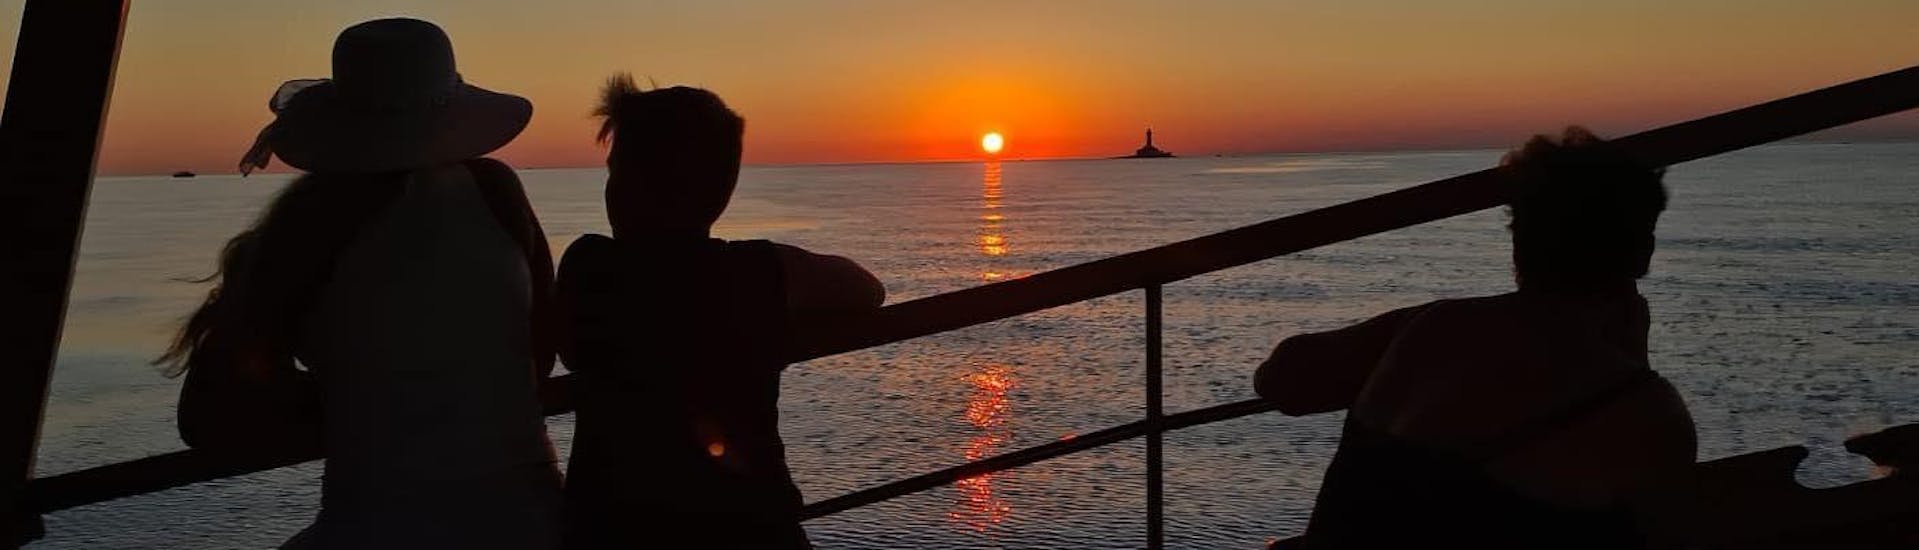 Menschen beobachten den Sonnenuntergang während der Bootstour zur Delfinbeobachtung bei Sonnenuntergang in Richtung Horizont.